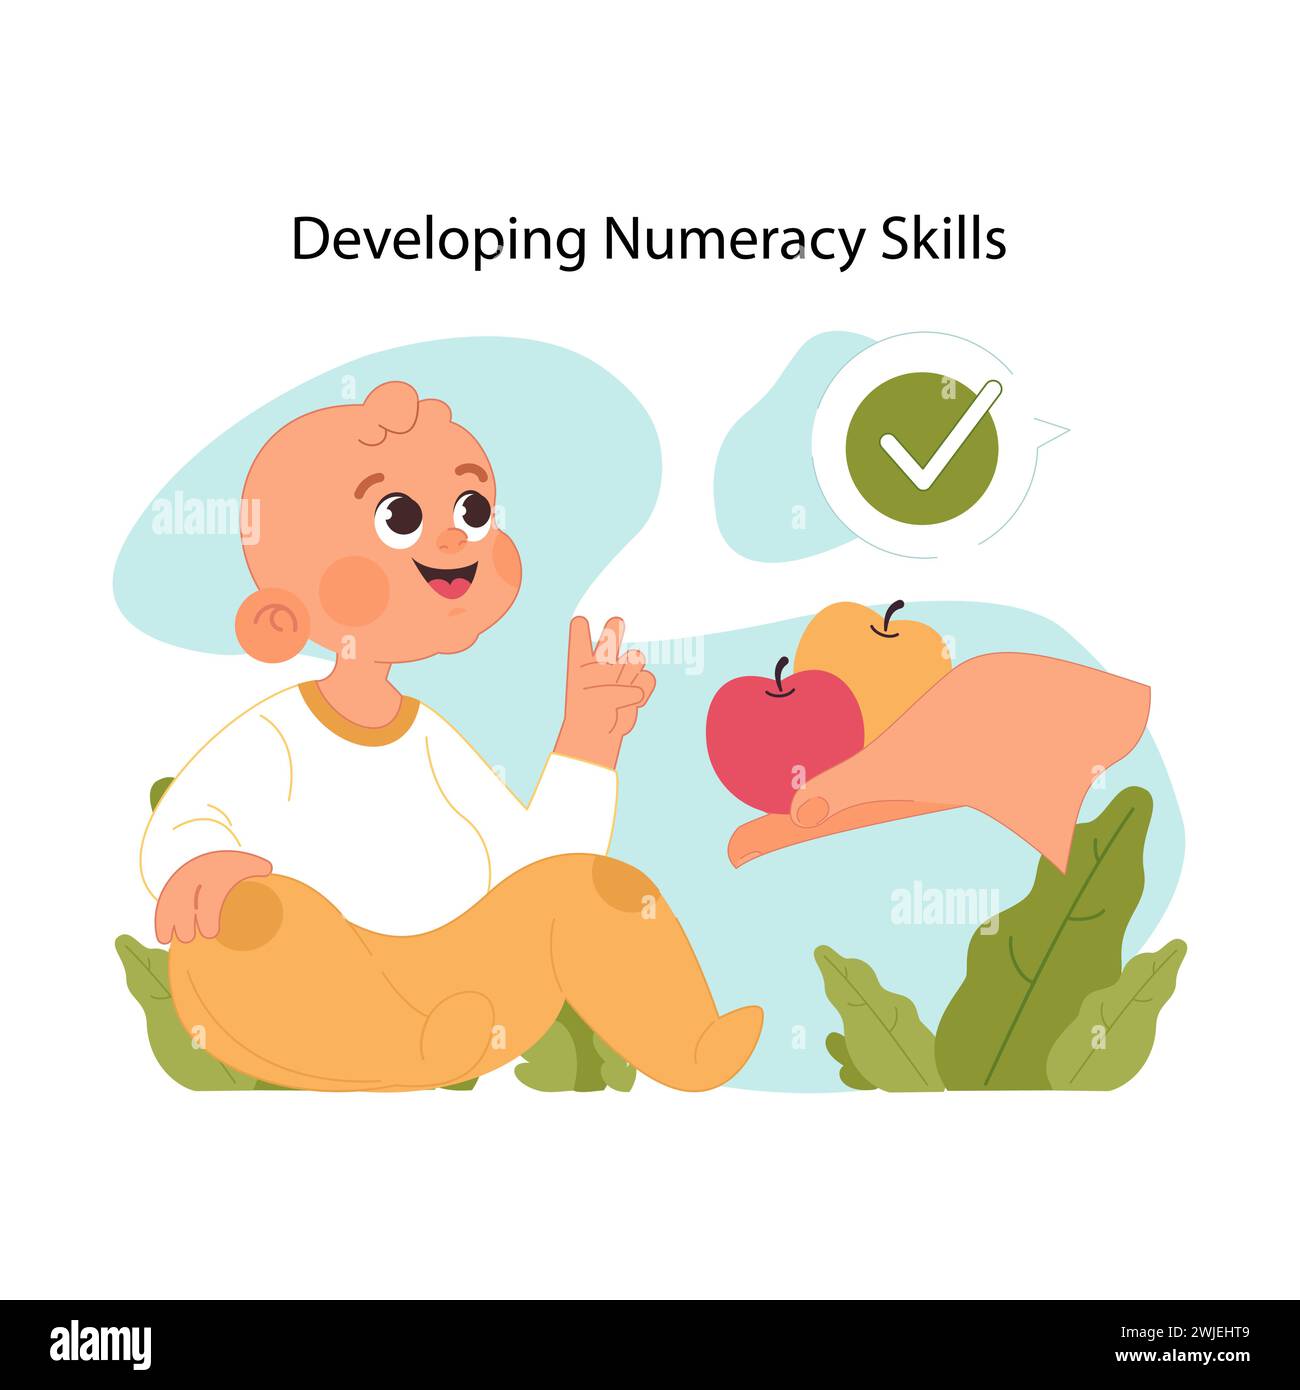 Kleinkind mit großem Lächeln lernt mit bunten Äpfeln zu zählen. Frühphasen der Entwicklung von Rechenkenntnissen. Eltern unterstützen Kleinkinder in der Erziehung und Entdeckung der Welt. Illustration des flachen Vektors Stock Vektor